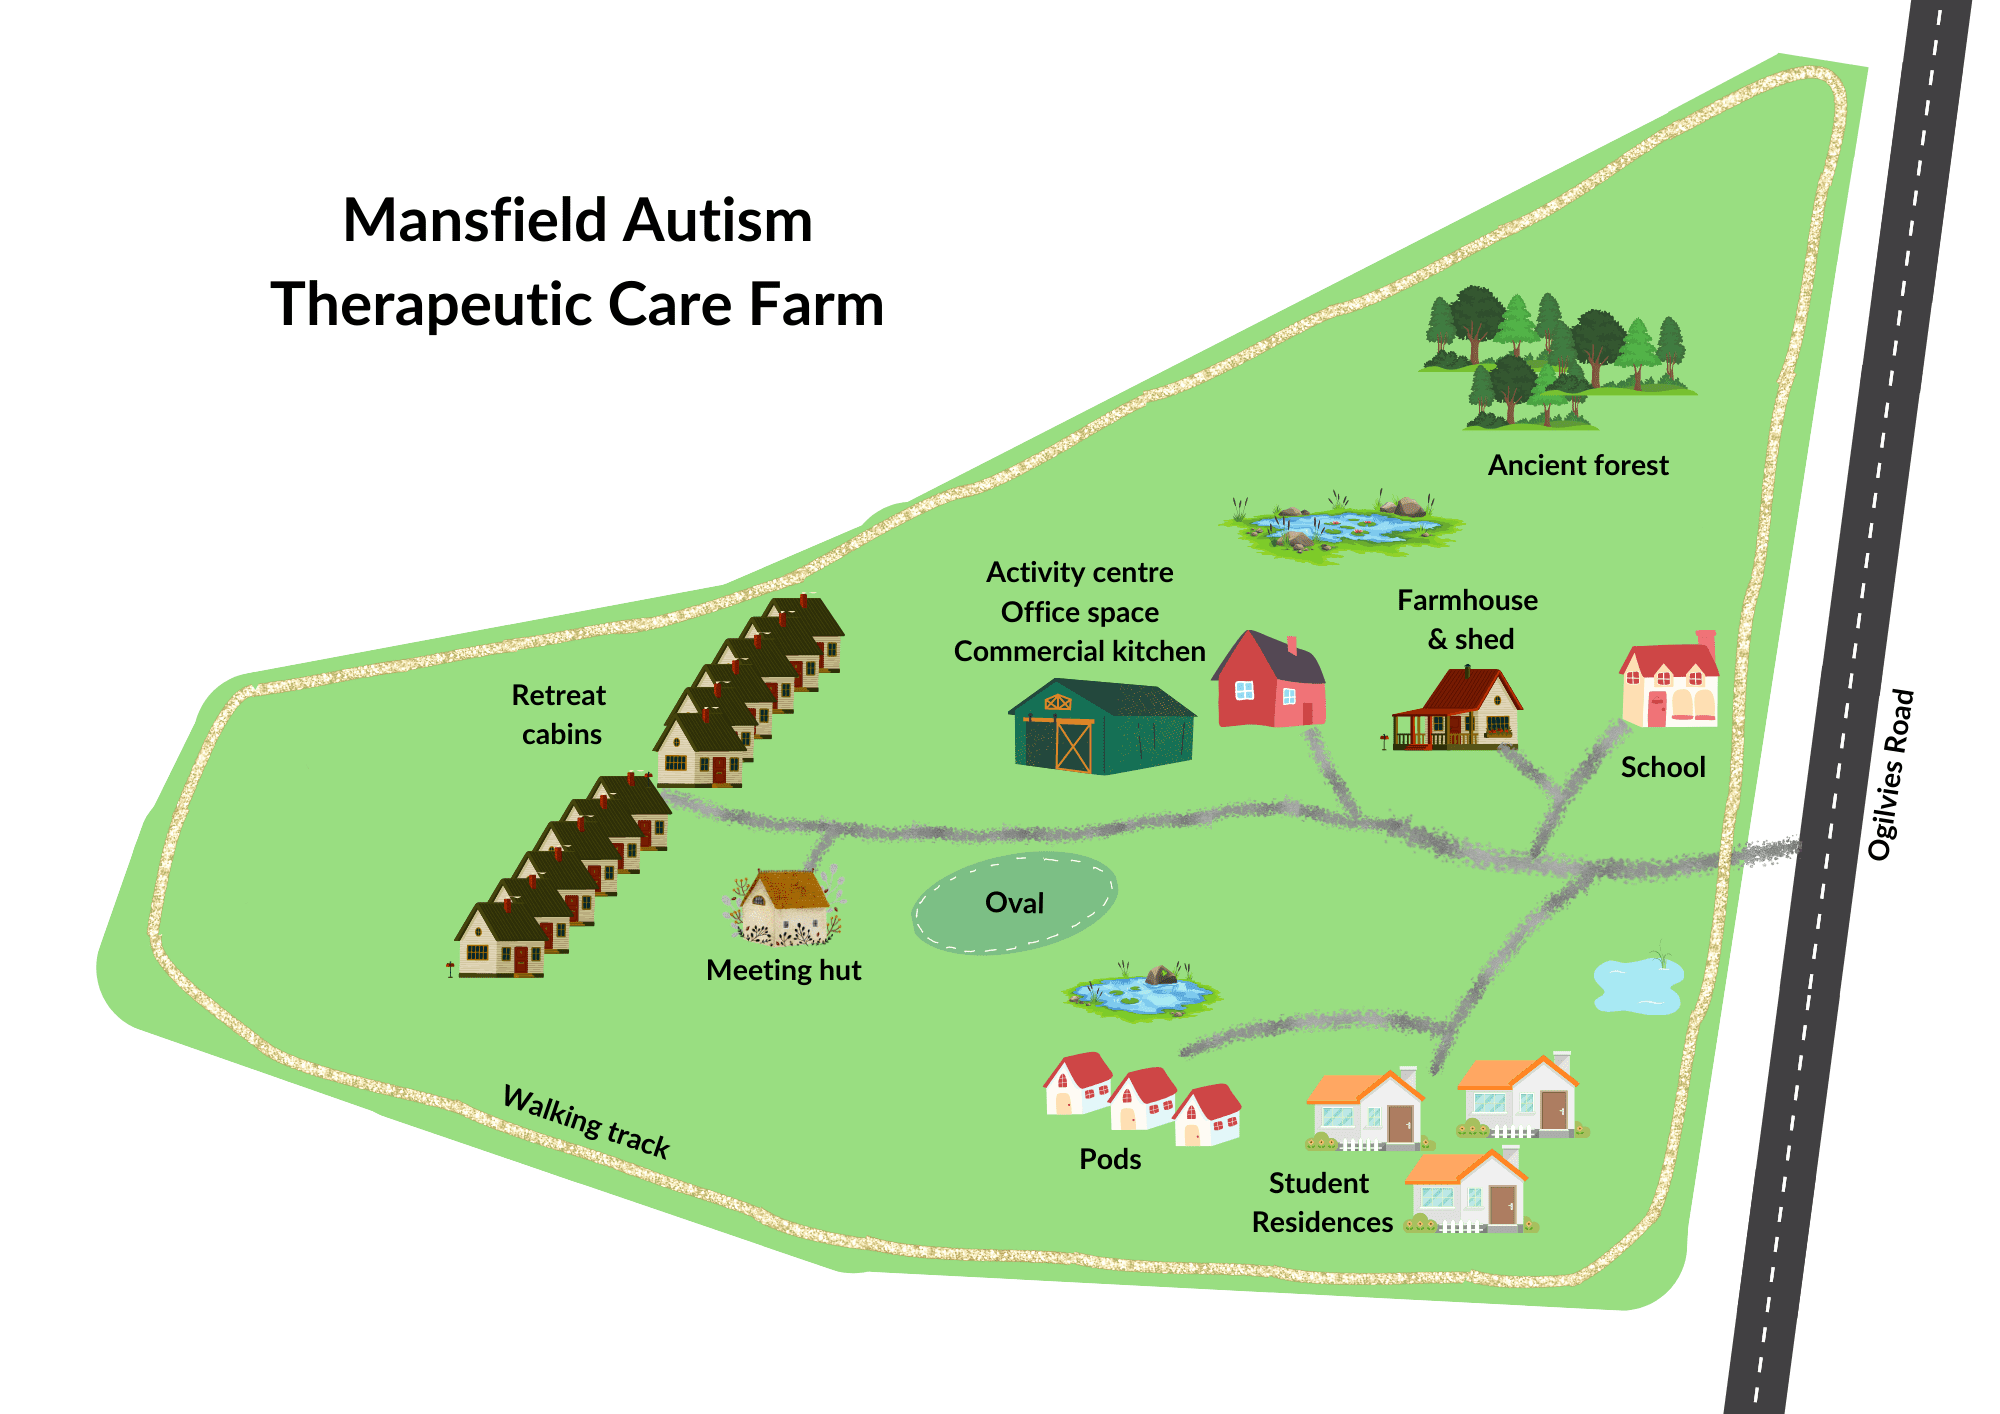 The Farm at a glance